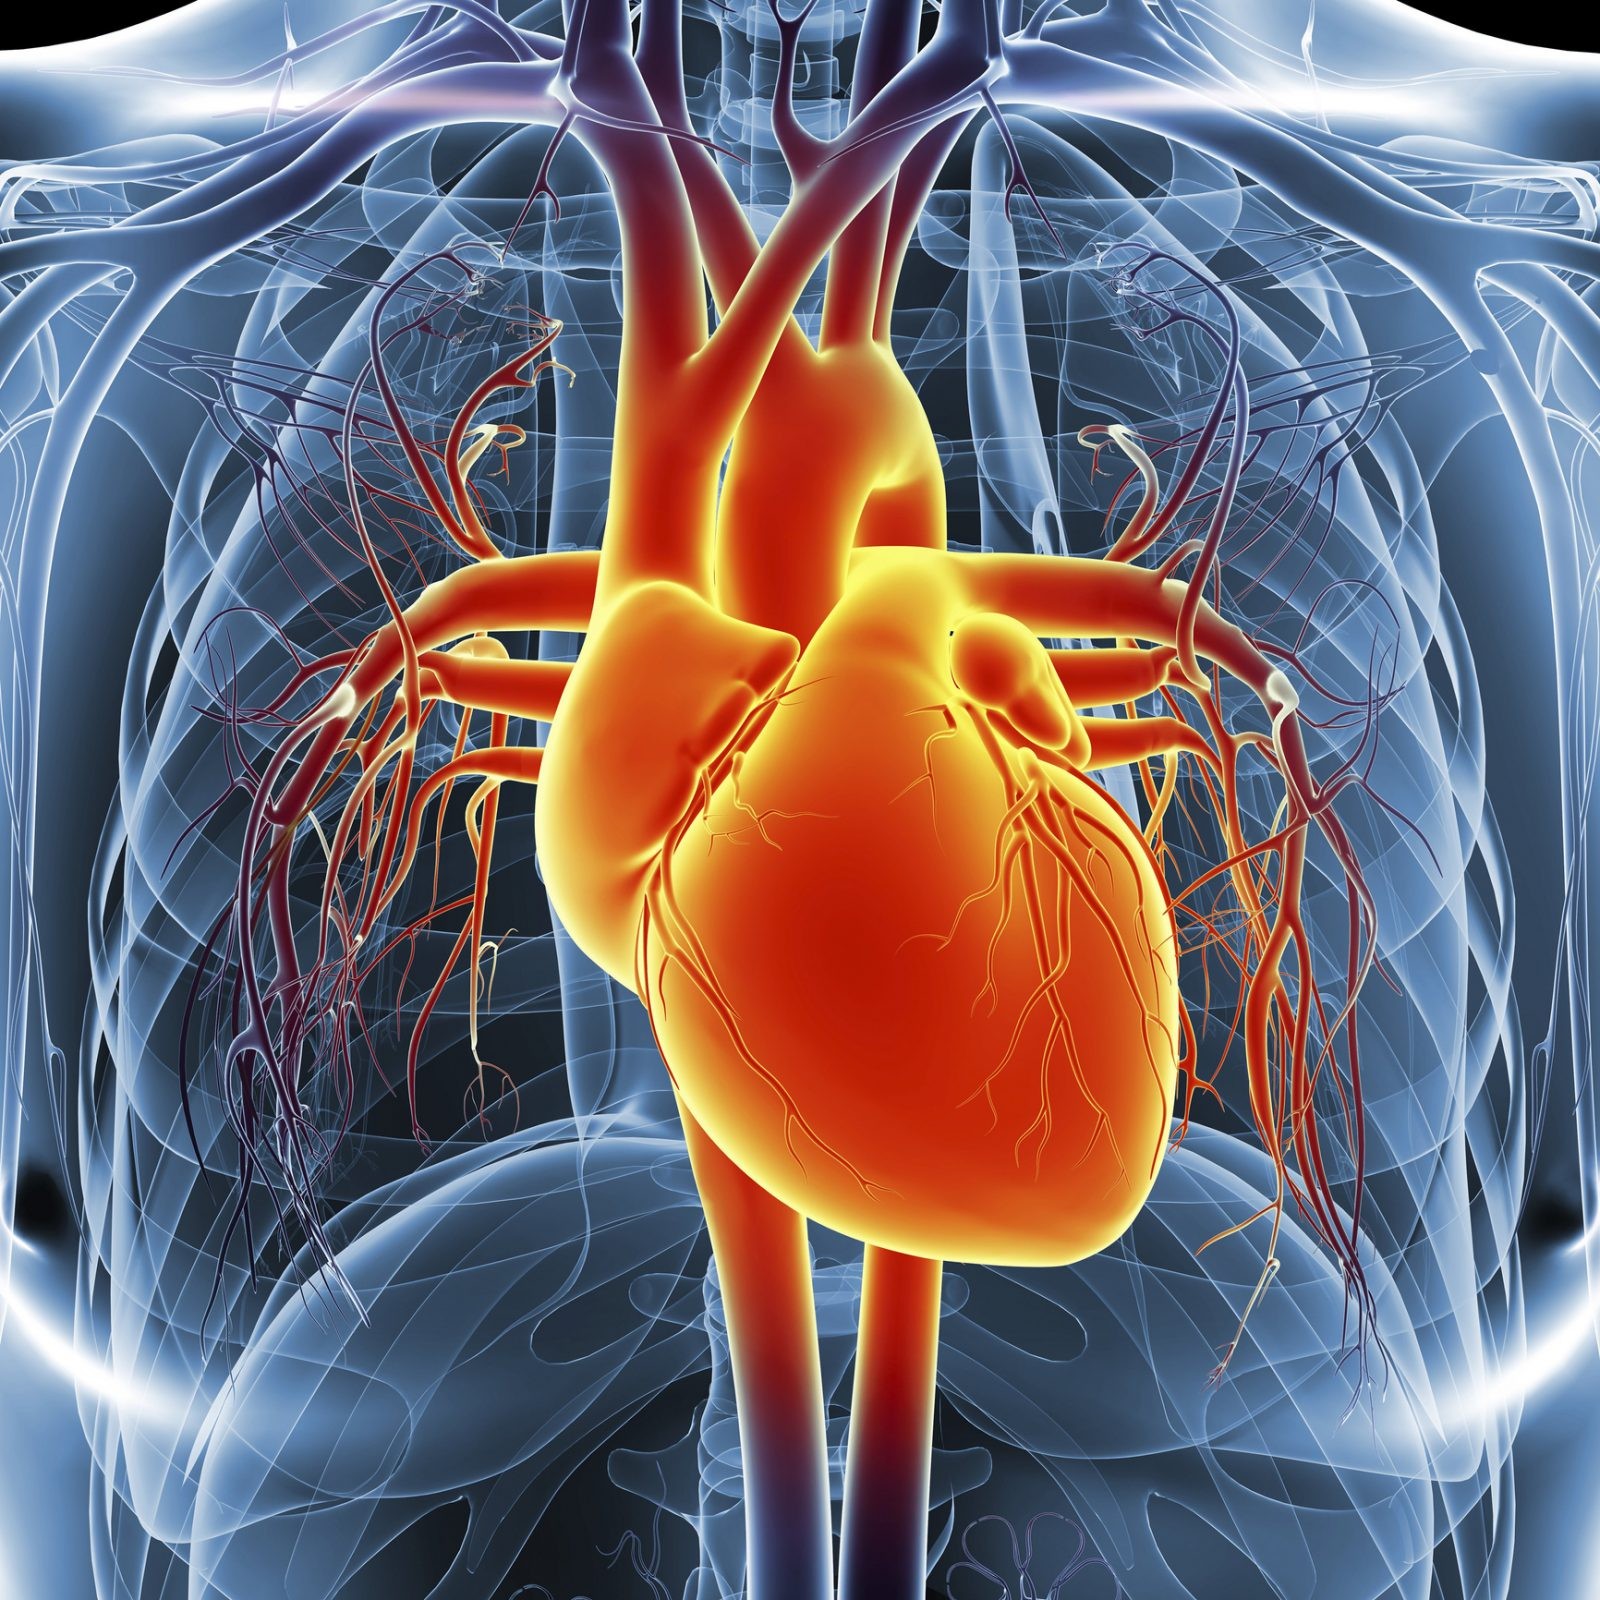 COVID-19 atakuje serce nawet u zdrowych ludzi